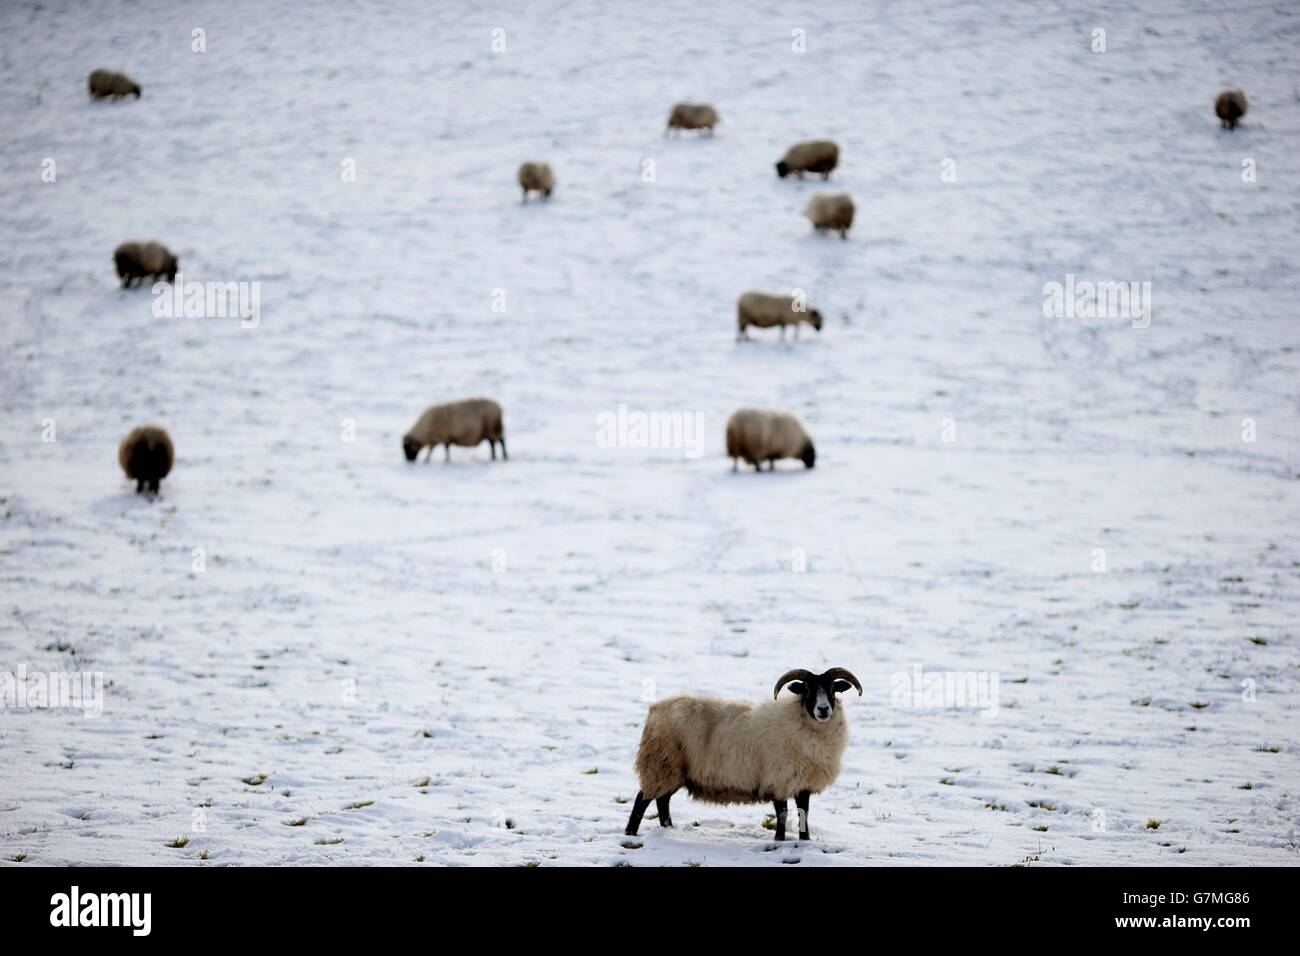 Schafe stehen auf einem schneebedeckten Feld vor Ballynahinch, Co. Down, als Schulen, Transport und Handy-Signale gestört wurden, nachdem starker Schnee Teile des Landes getroffen hatte. Stockfoto